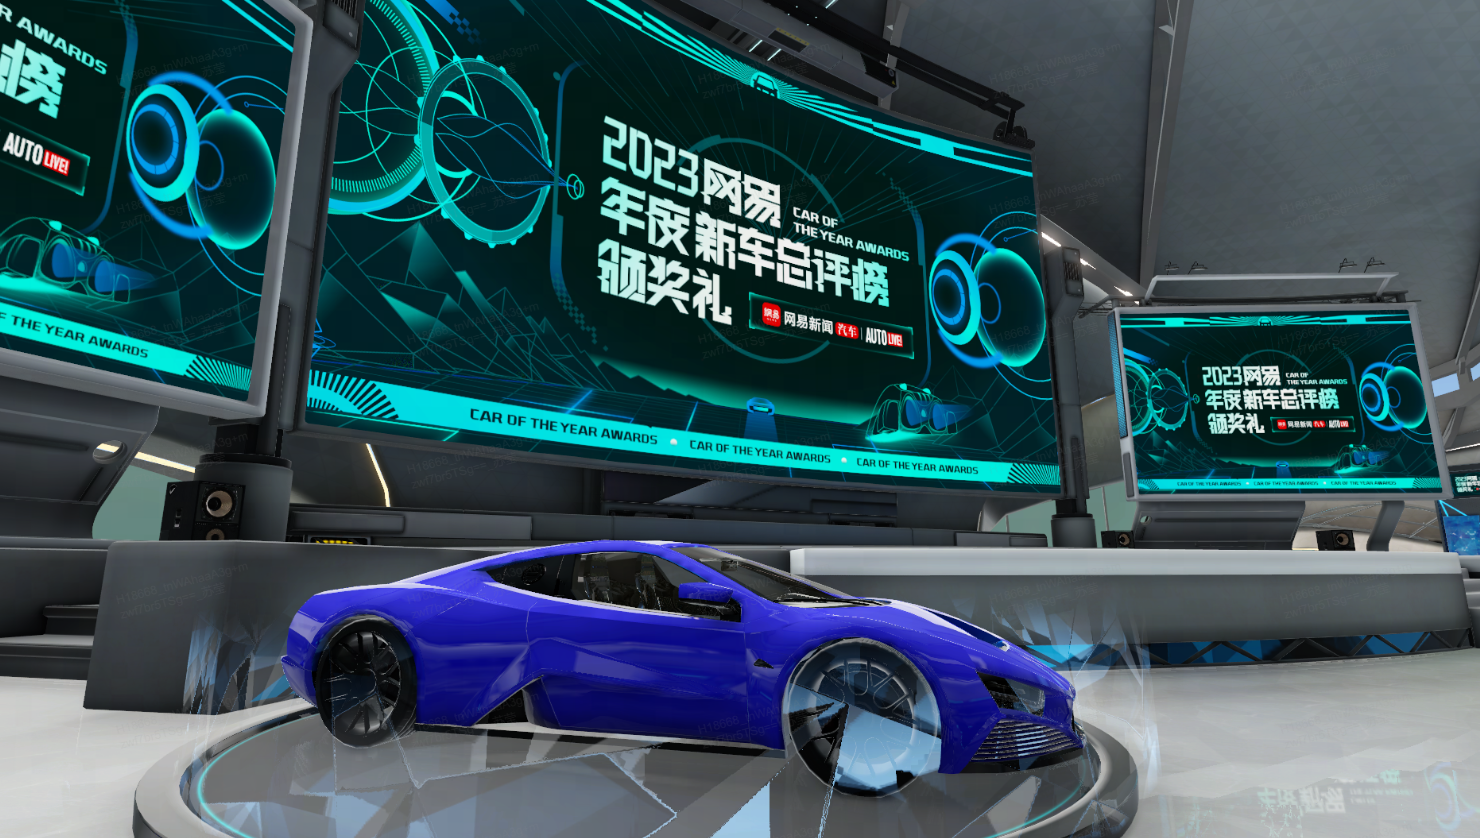 图片展示了一款蓝色的未来感跑车，置于一个带有多个高科技屏幕的现代展示厅内，屏幕显示着2023年的文字。